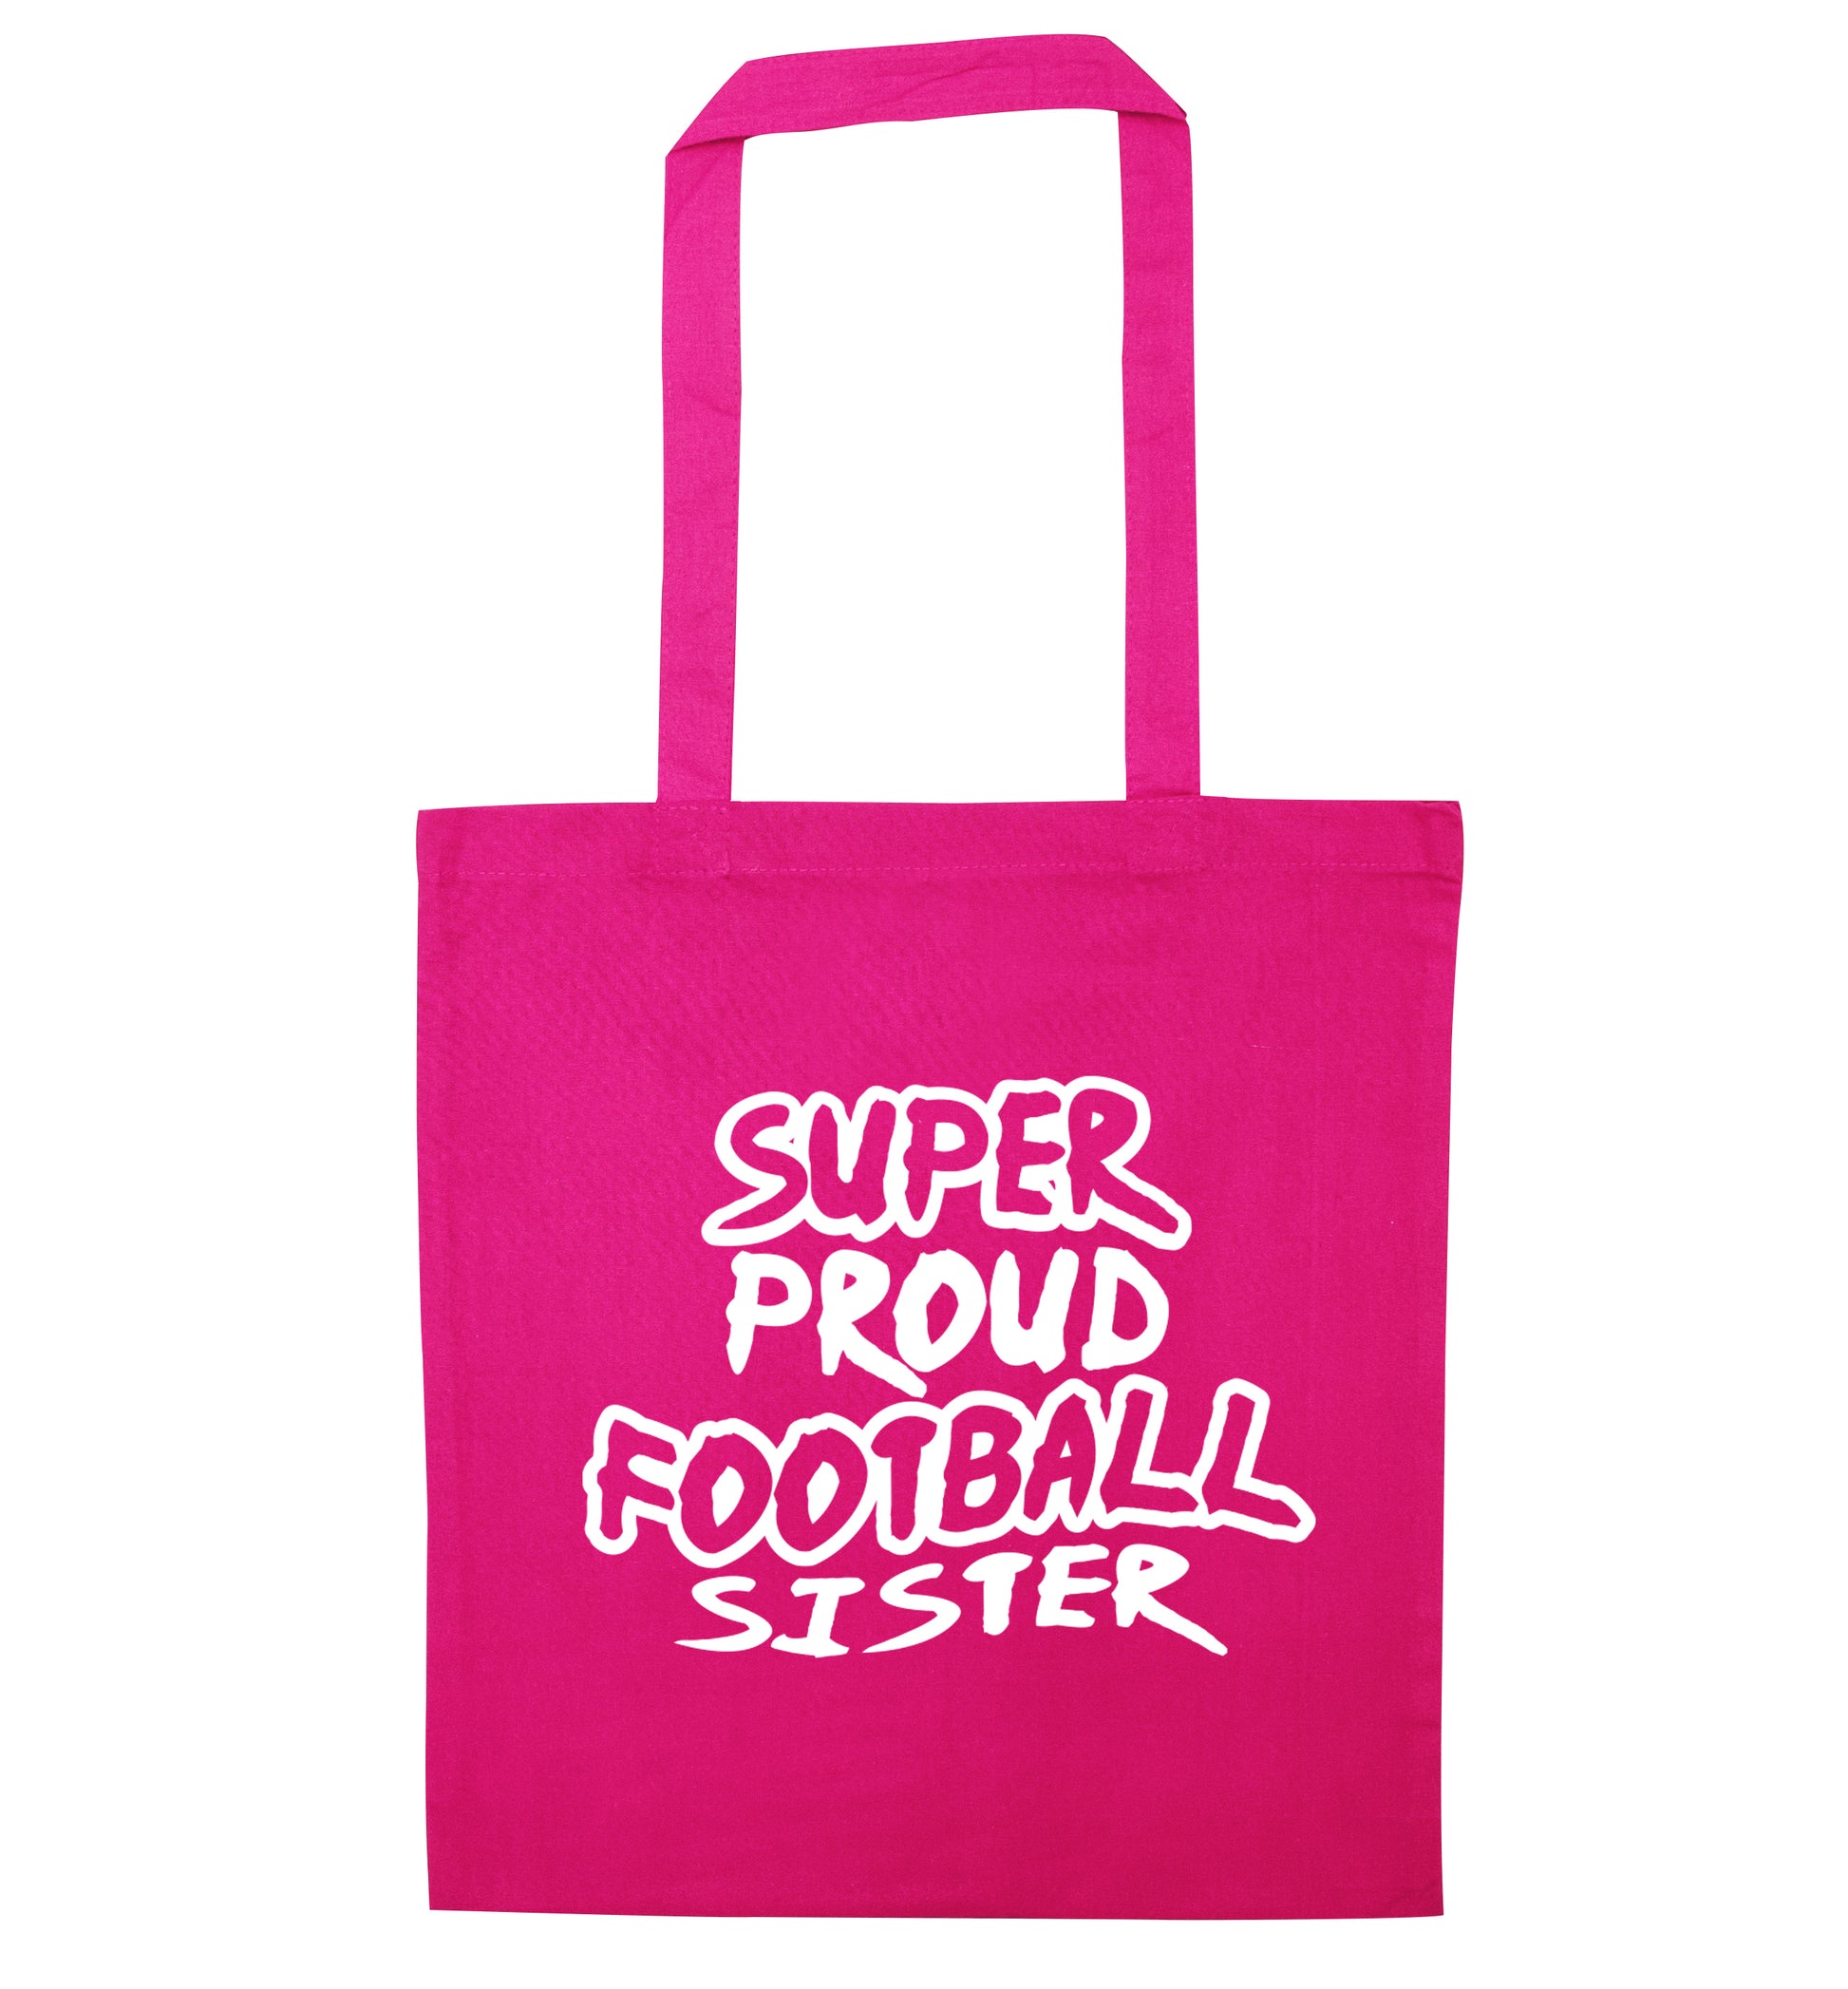 Super proud football sister pink tote bag